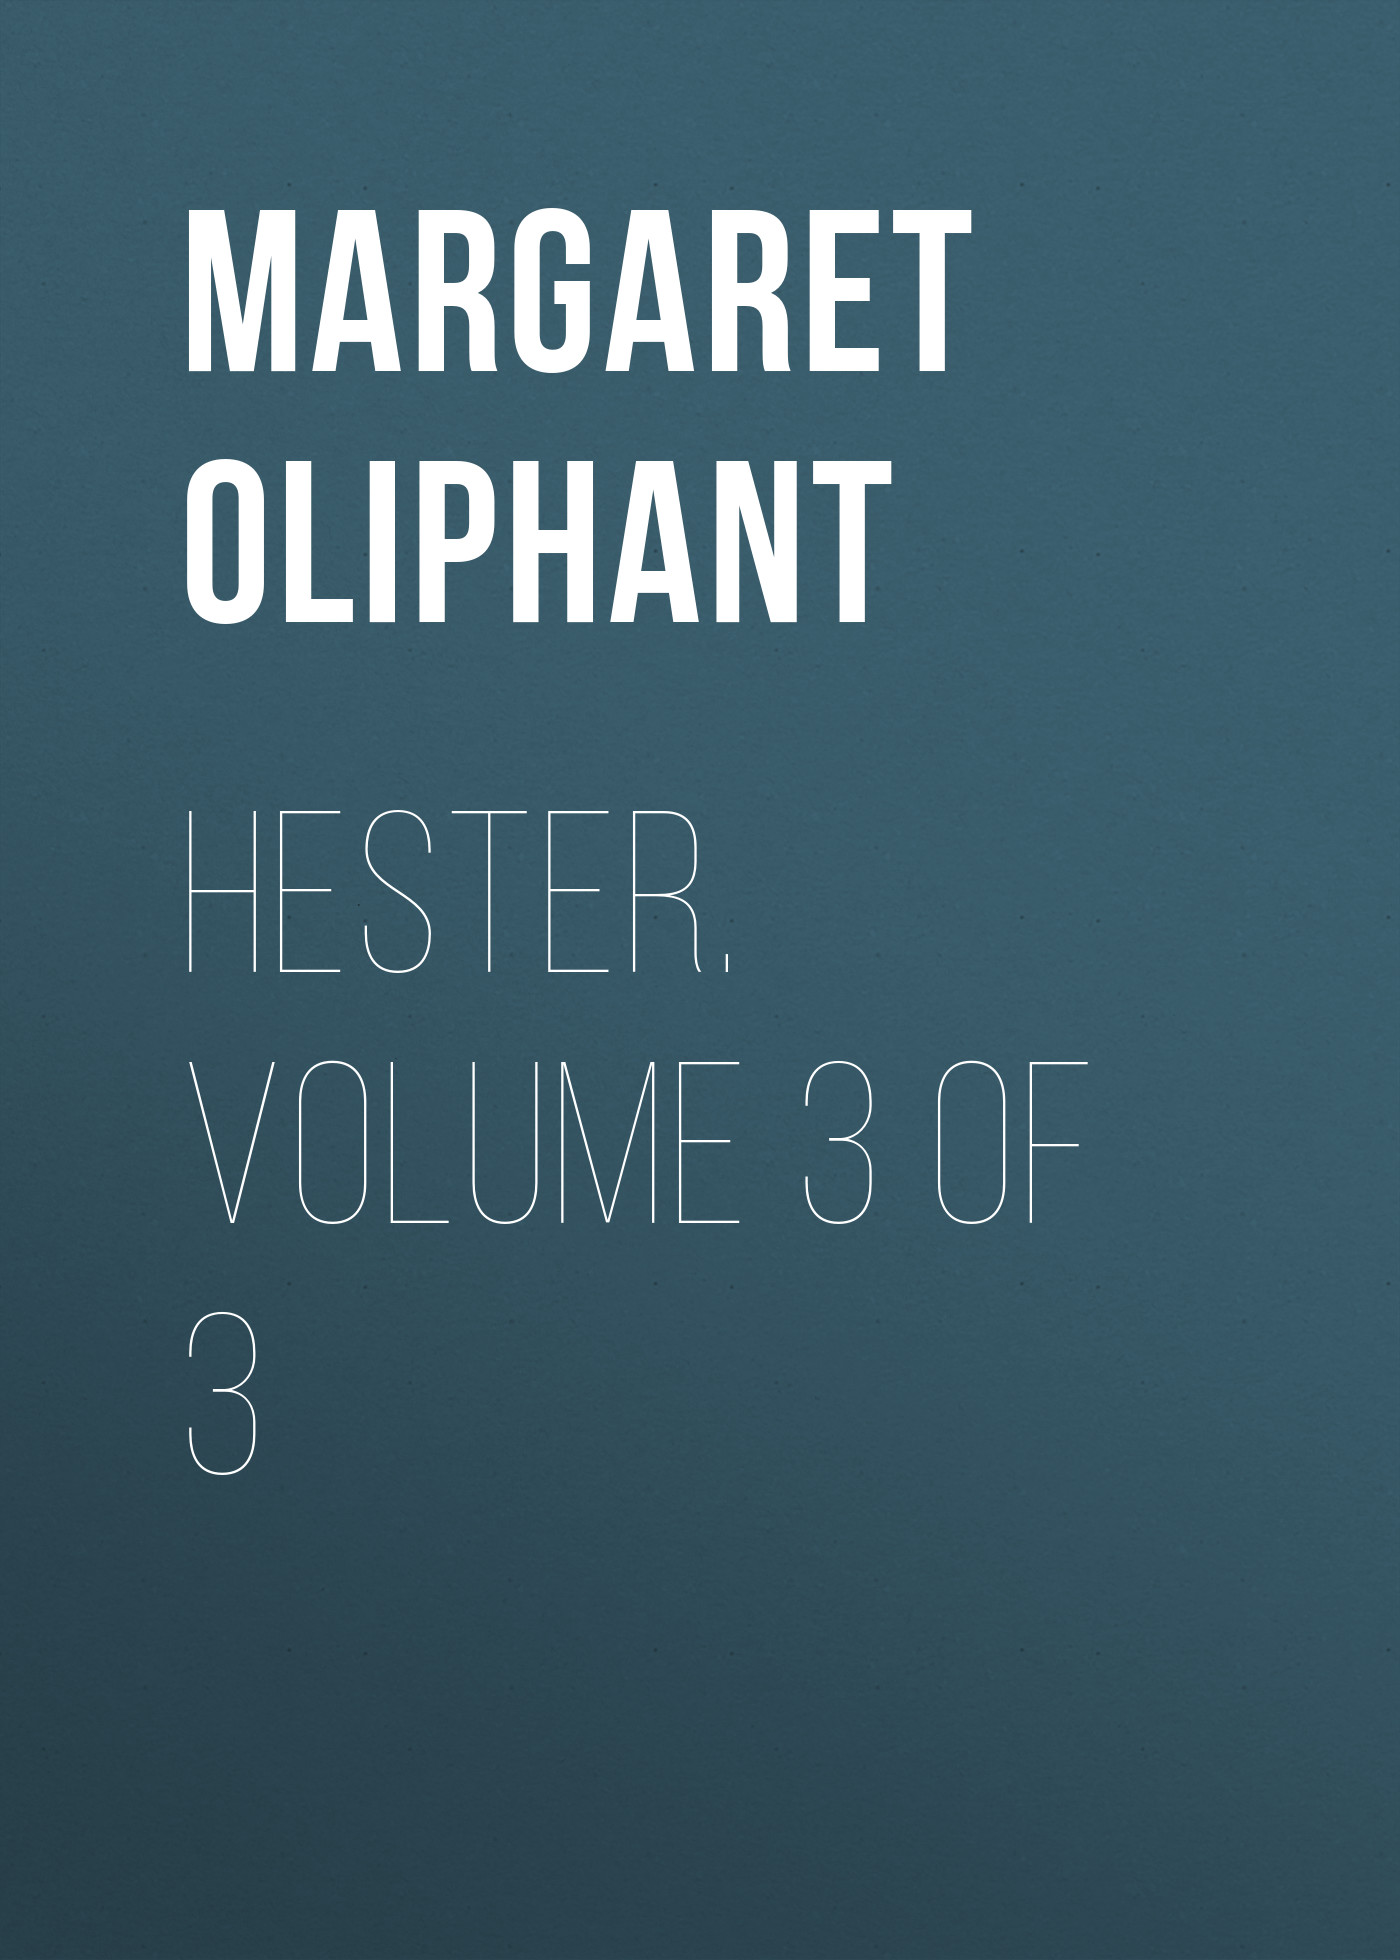 Книга Hester. Volume 3 of 3 из серии , созданная Margaret Oliphant, может относится к жанру Зарубежная классика, Иностранные языки. Стоимость электронной книги Hester. Volume 3 of 3 с идентификатором 23162747 составляет 5.99 руб.